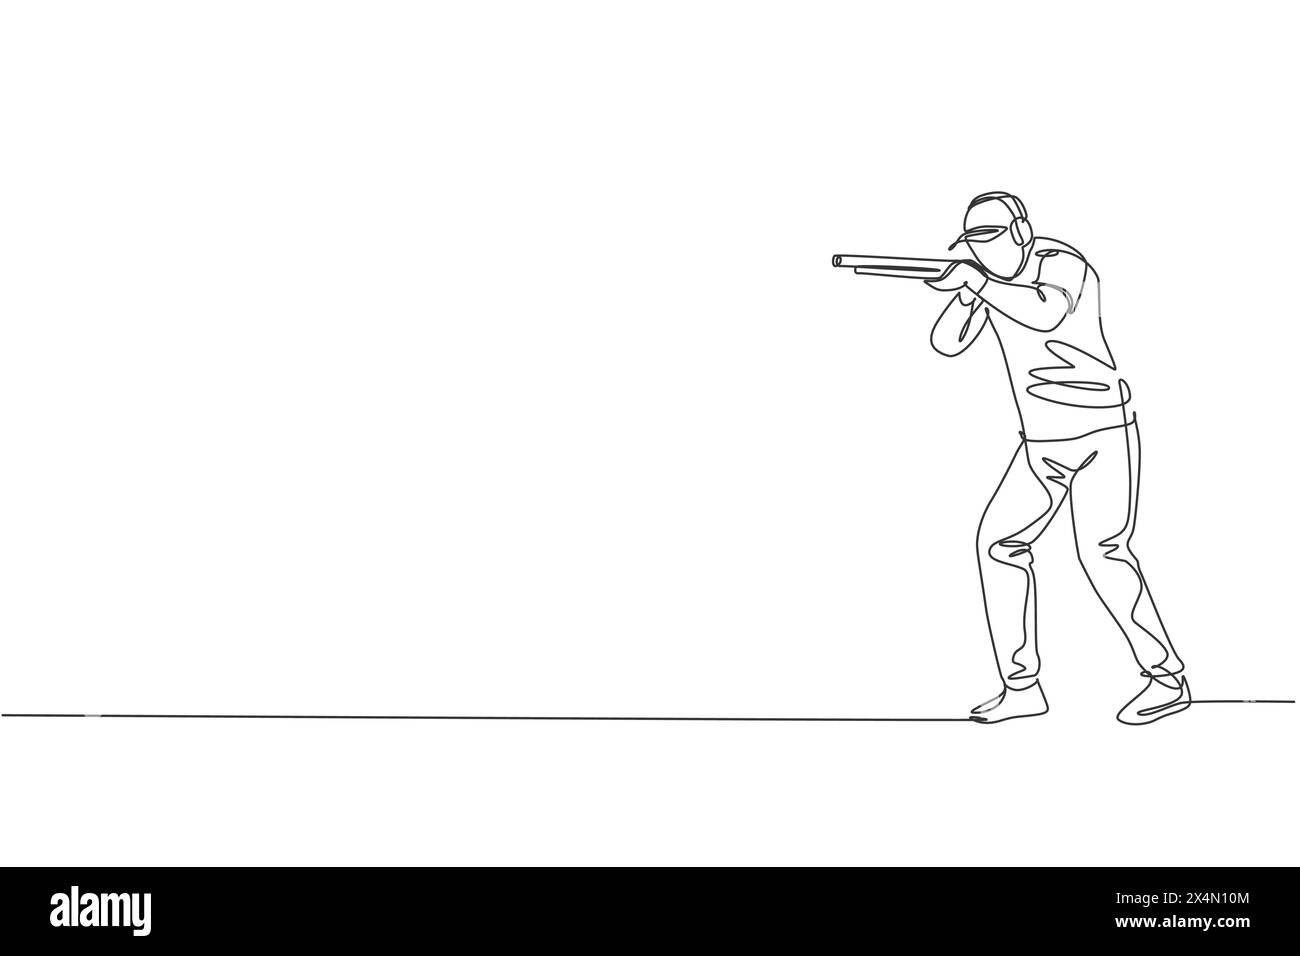 Eine durchgehende Linienzeichnung eines jungen Mannes auf dem Schießübungsplatz für Wettkämpfe mit Gewehrgewehr. Sportkonzept für Outdoor-Shooting. Dyna Stock Vektor